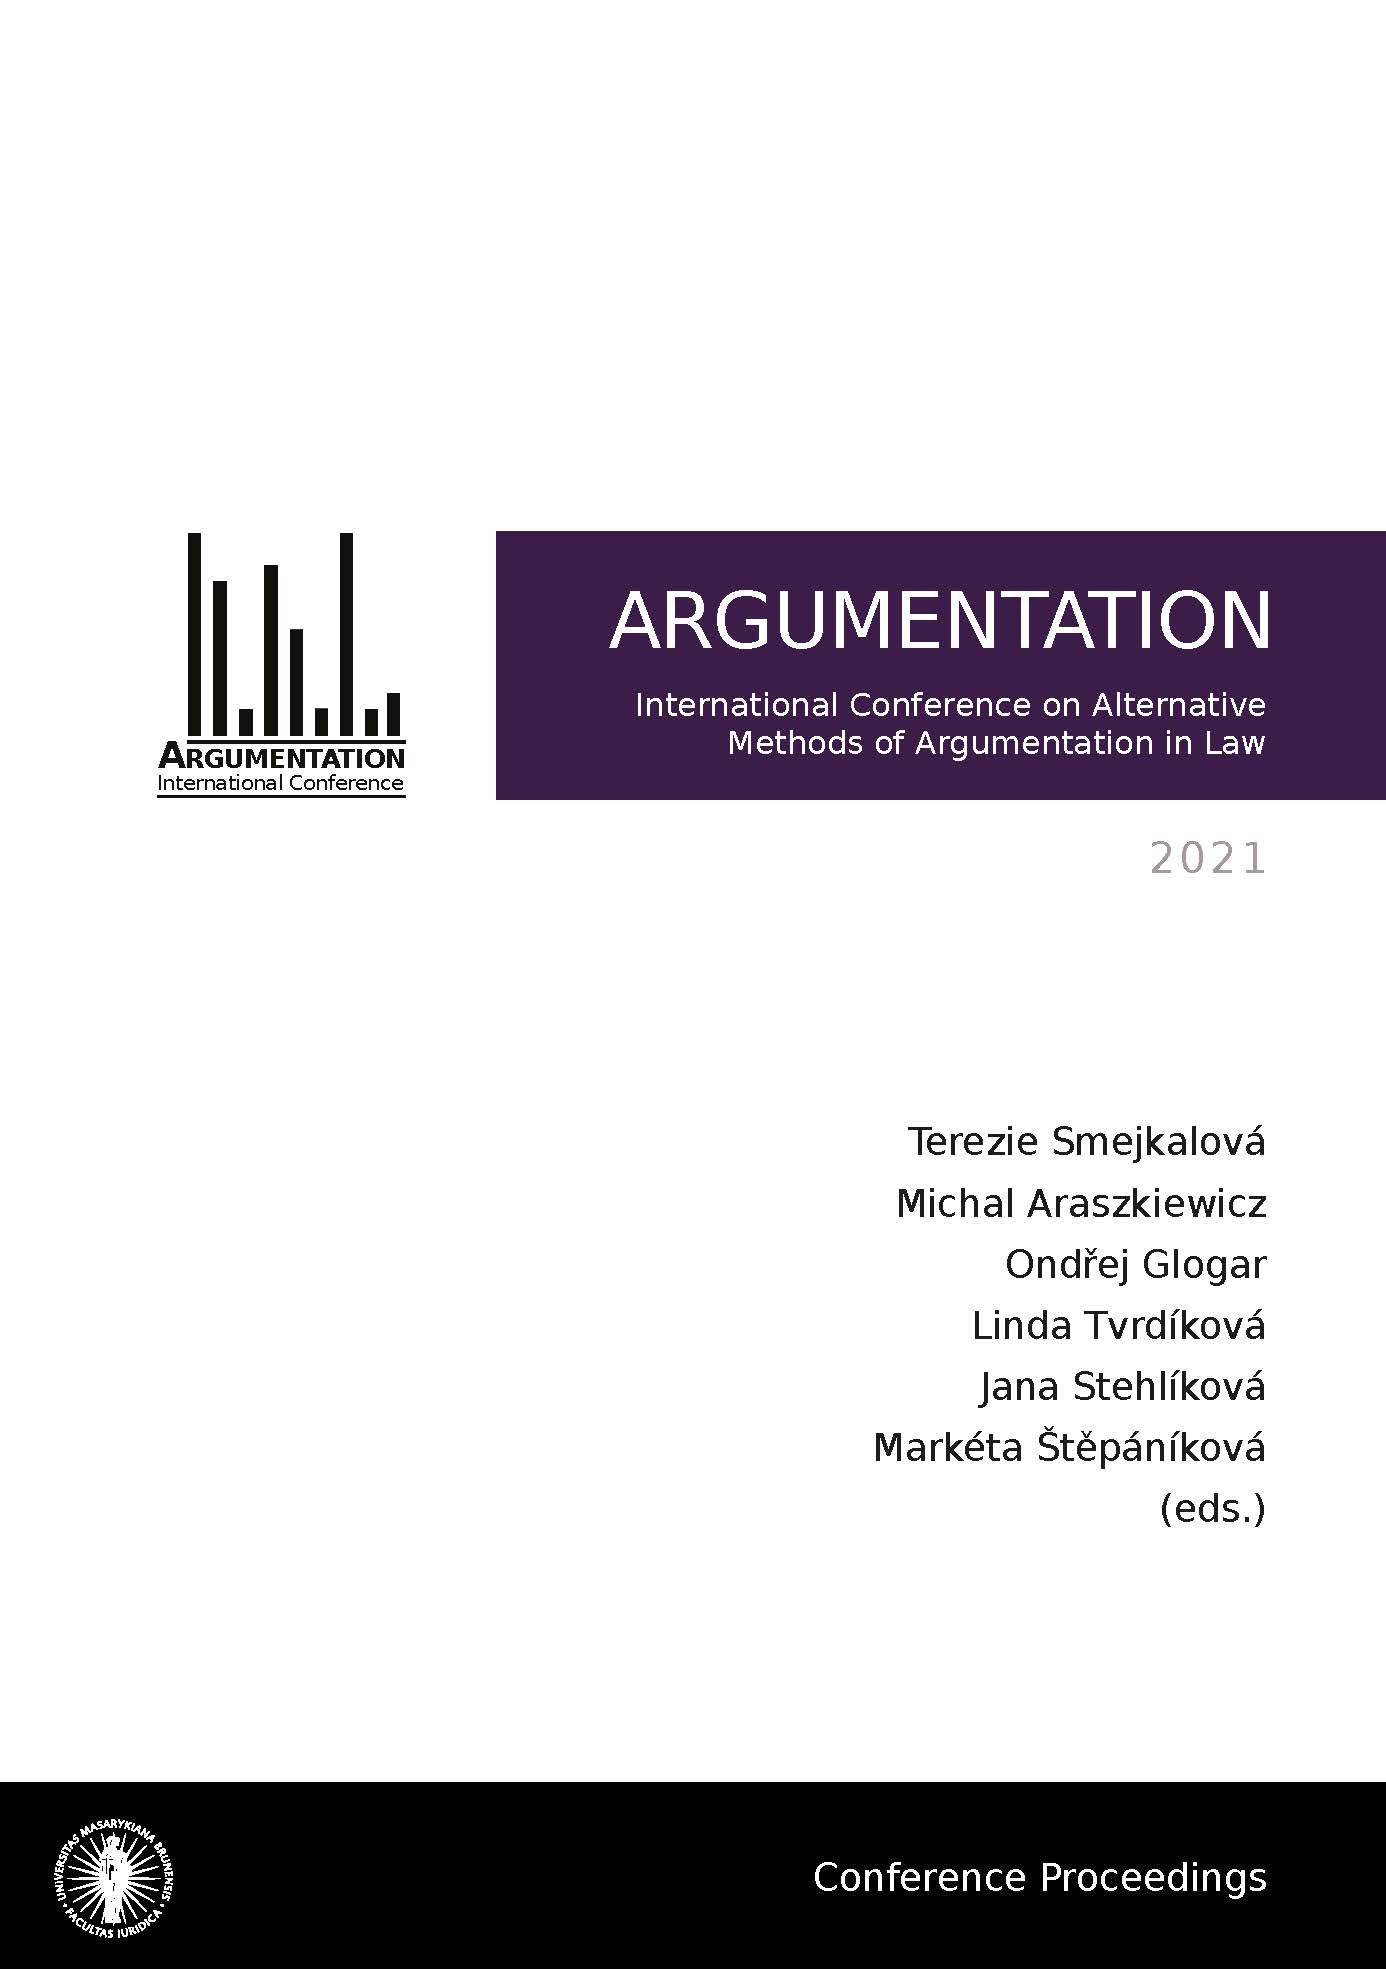 Obálka pro Argumentation 2021. International Conference on Alternative Methods of Argumentation in Law